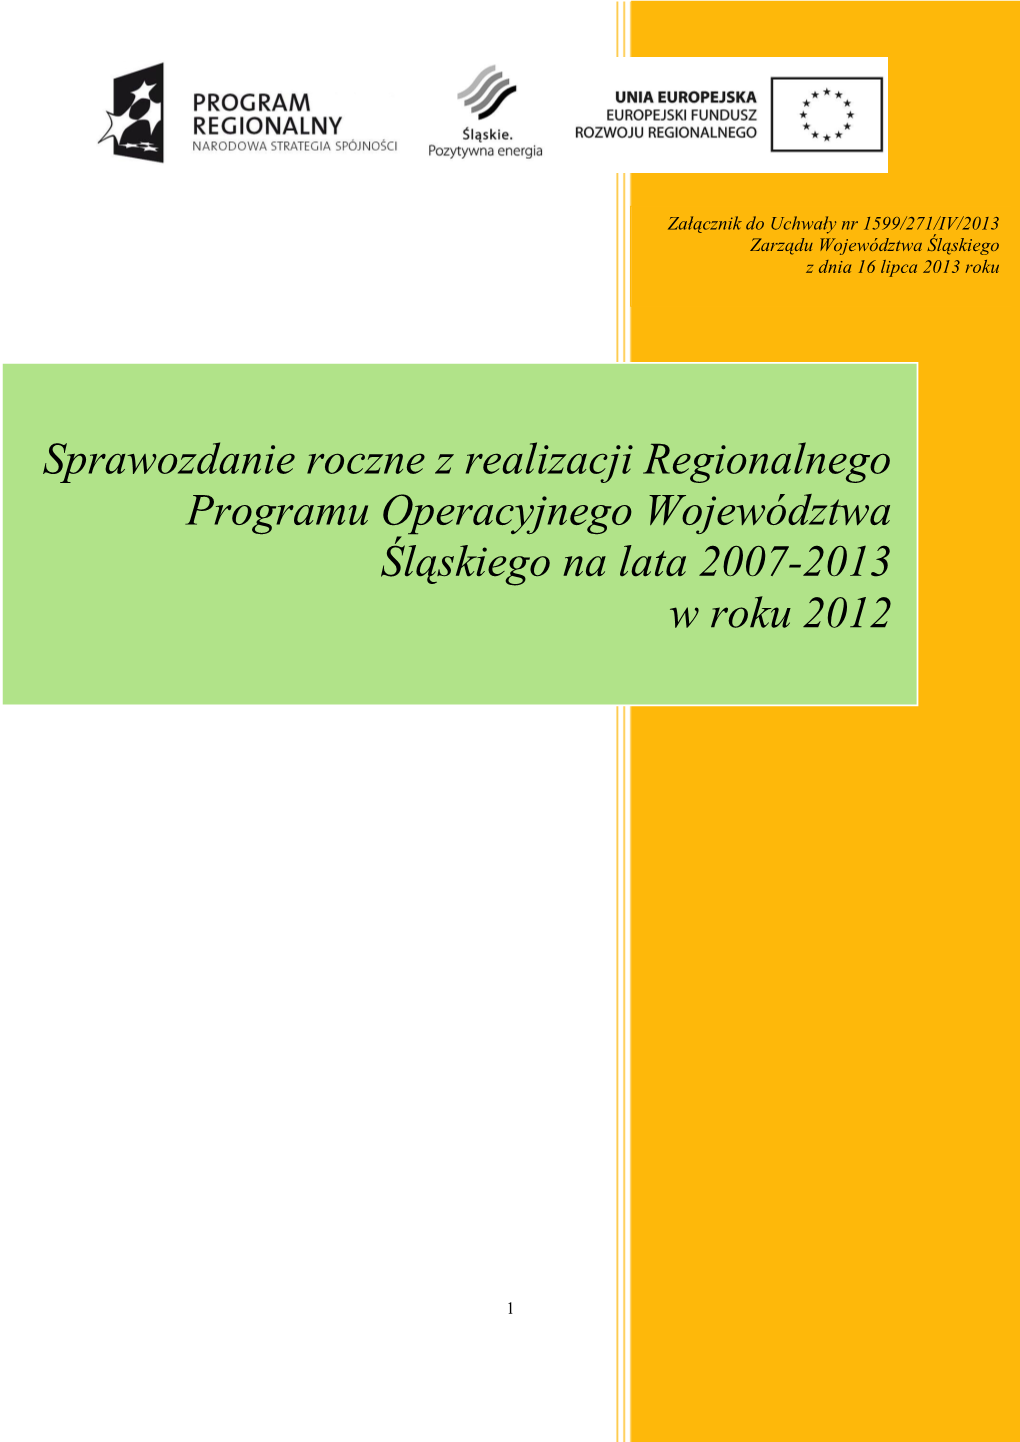 Sprawozdanie Roczne Z Realizacji Regionalnego Programu Operacyjnego Województwa Śląskiego Na Lata 2007-2013 W Roku 2012